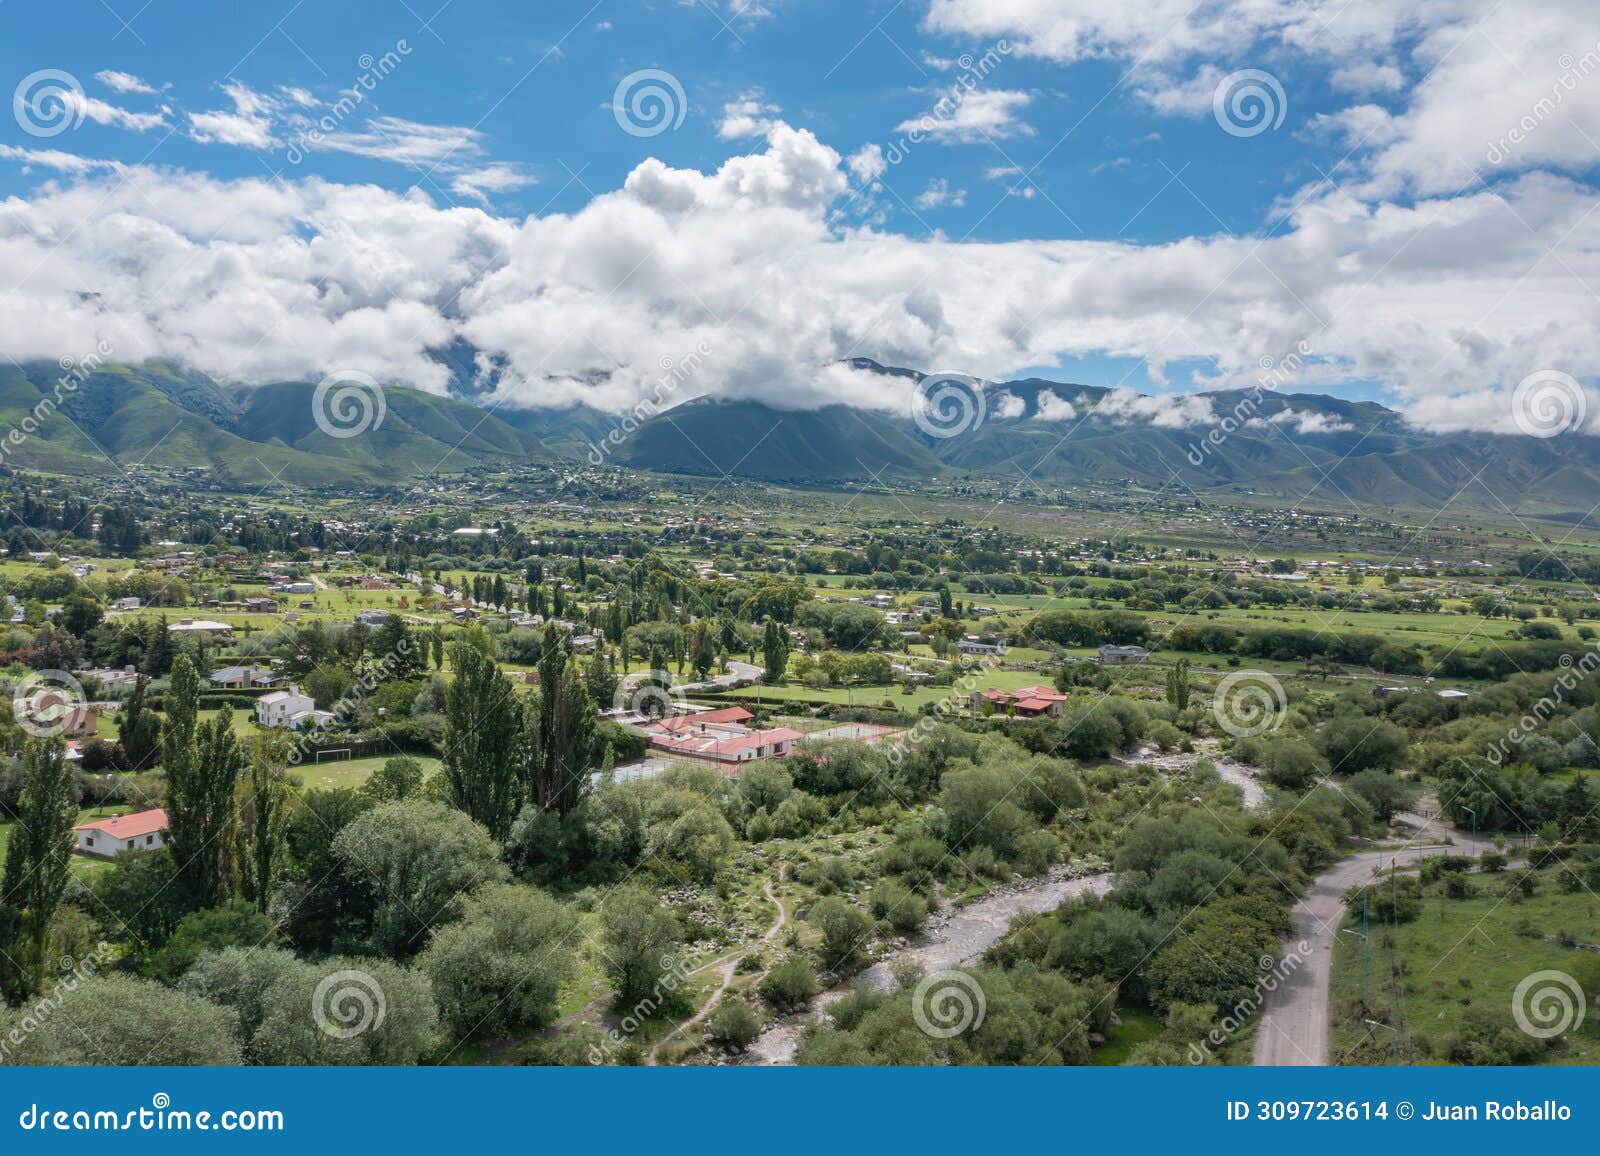 aerial view of the tafi river in tafi del valle tucuman